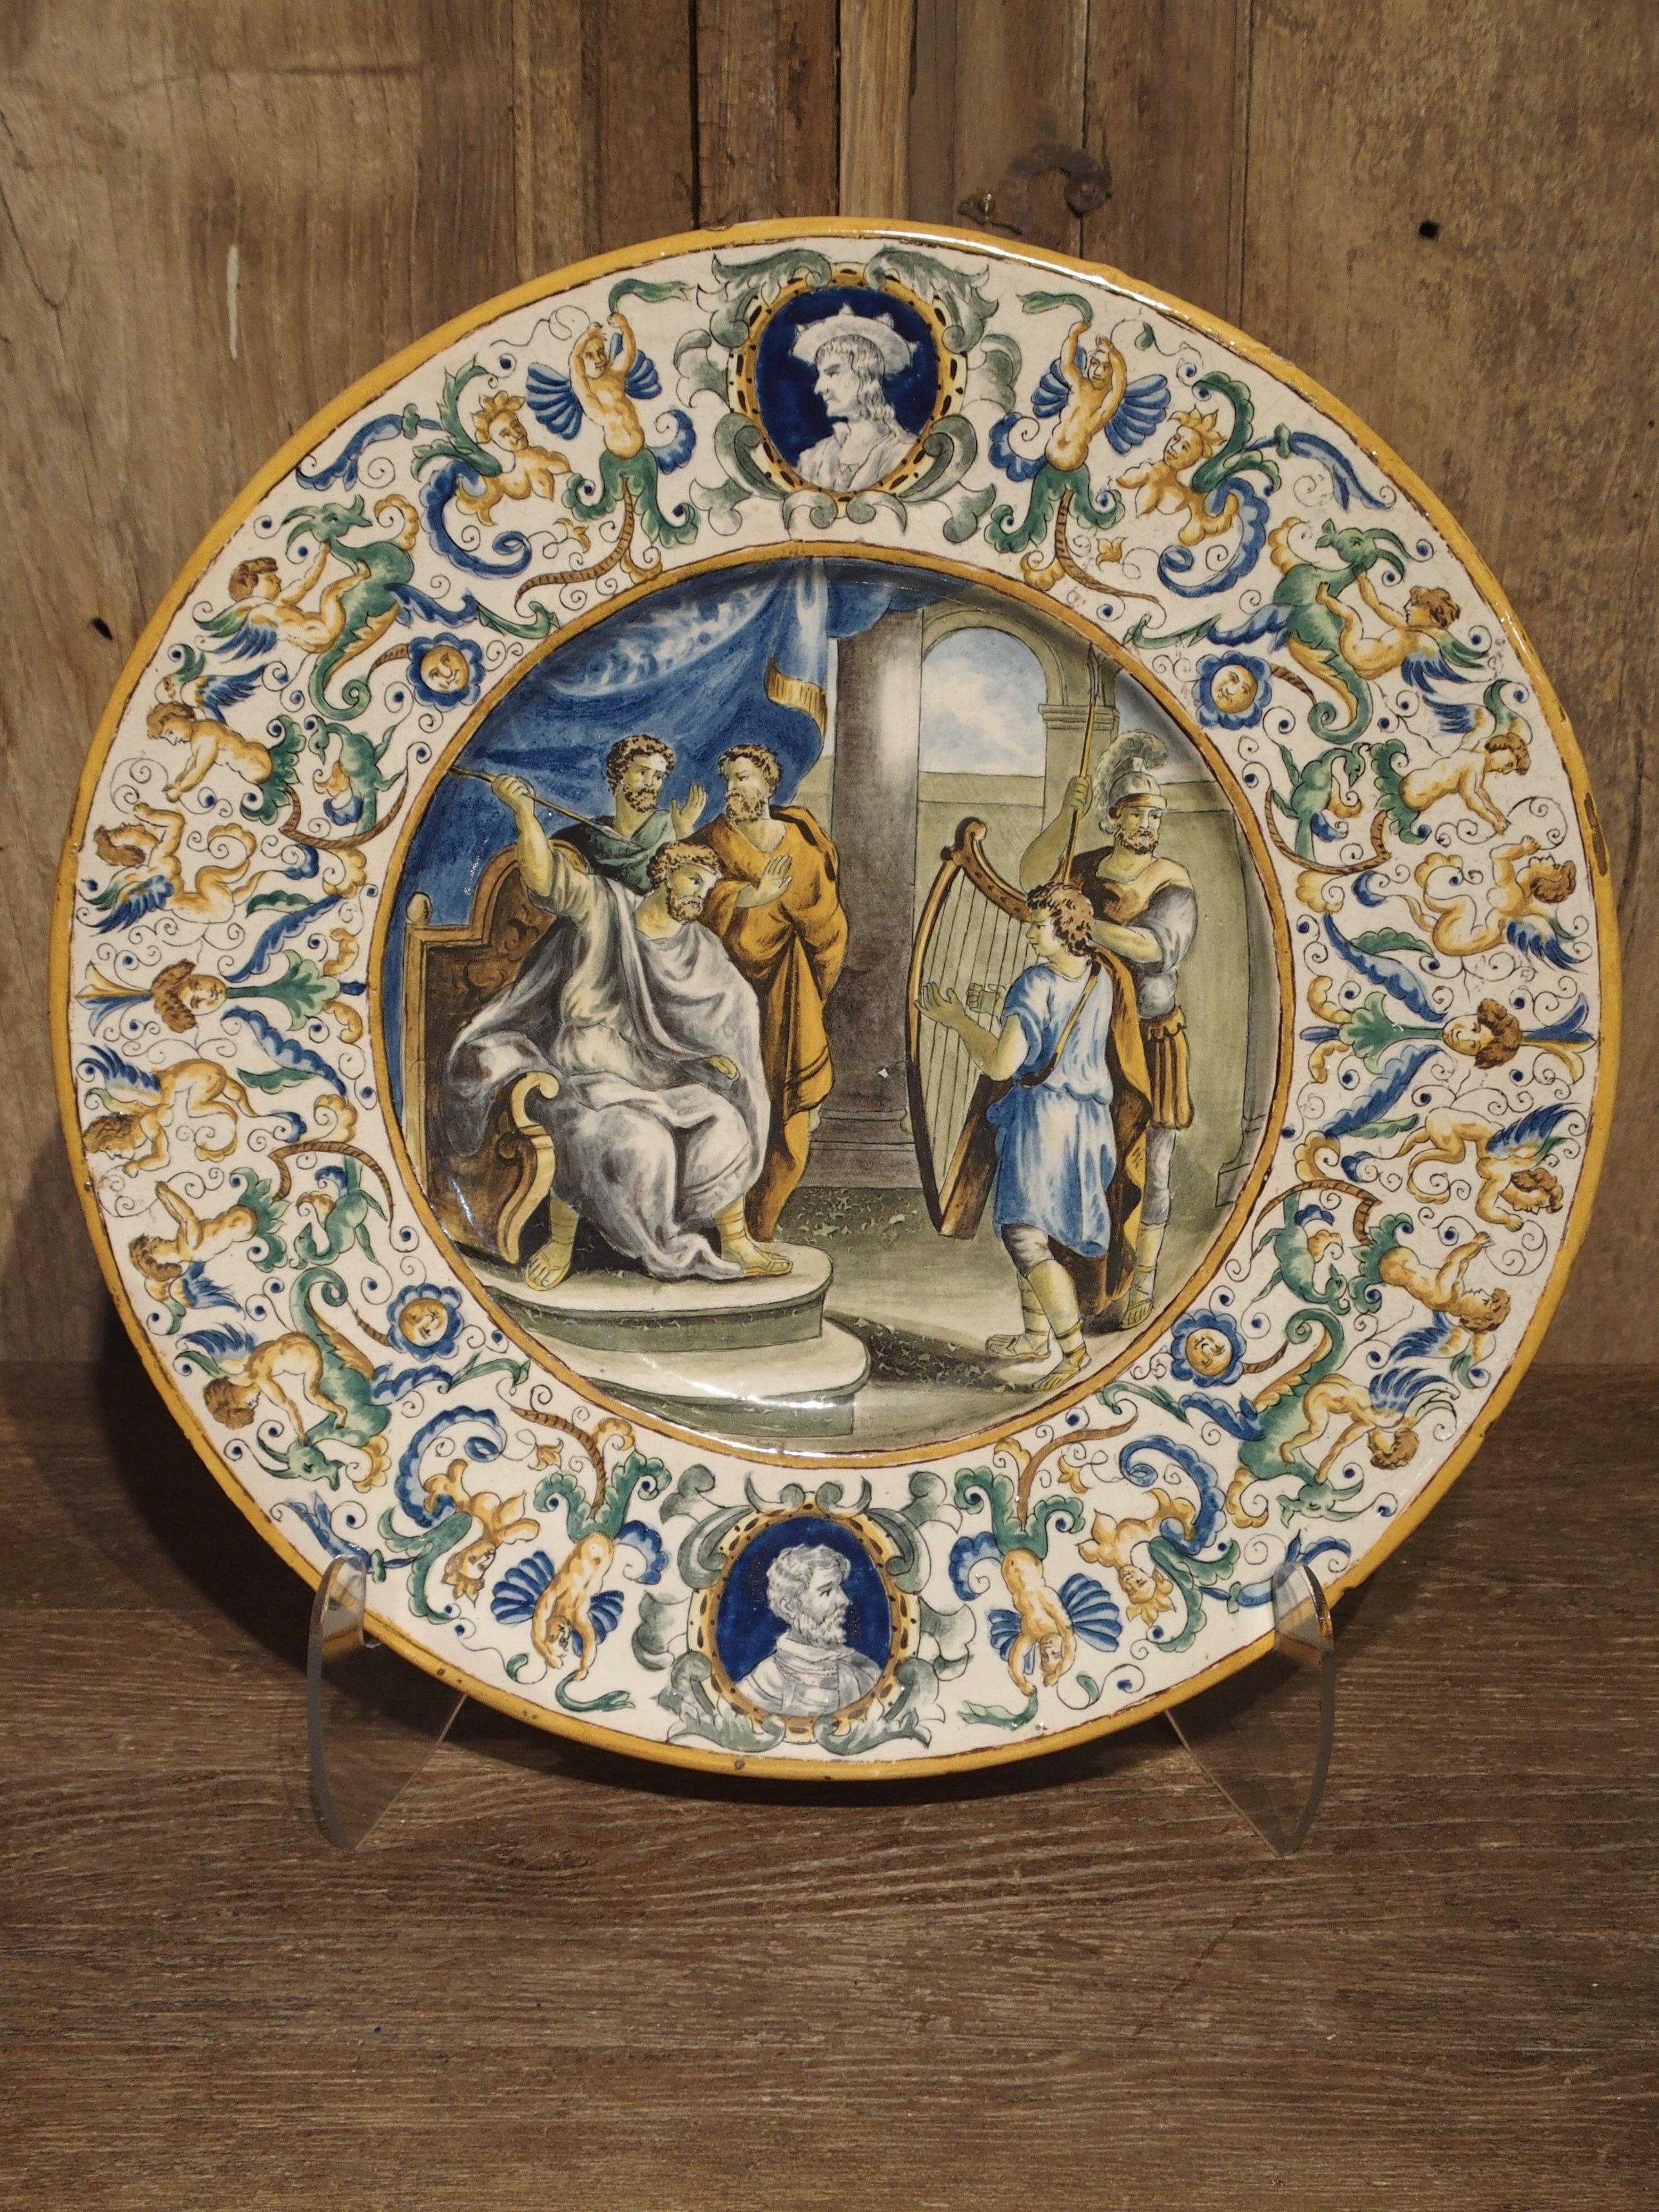 Diese handbemalte Majolika-Platte aus Italien hat zwei Bereiche mit Ornamenten. Der äußere Kreis zeigt die Büsten von zwei verschiedenen Männern, eine oben und eine unten auf der Platte. Diese sind umgeben von einer Fülle von Halbfiguren, Gesichtern